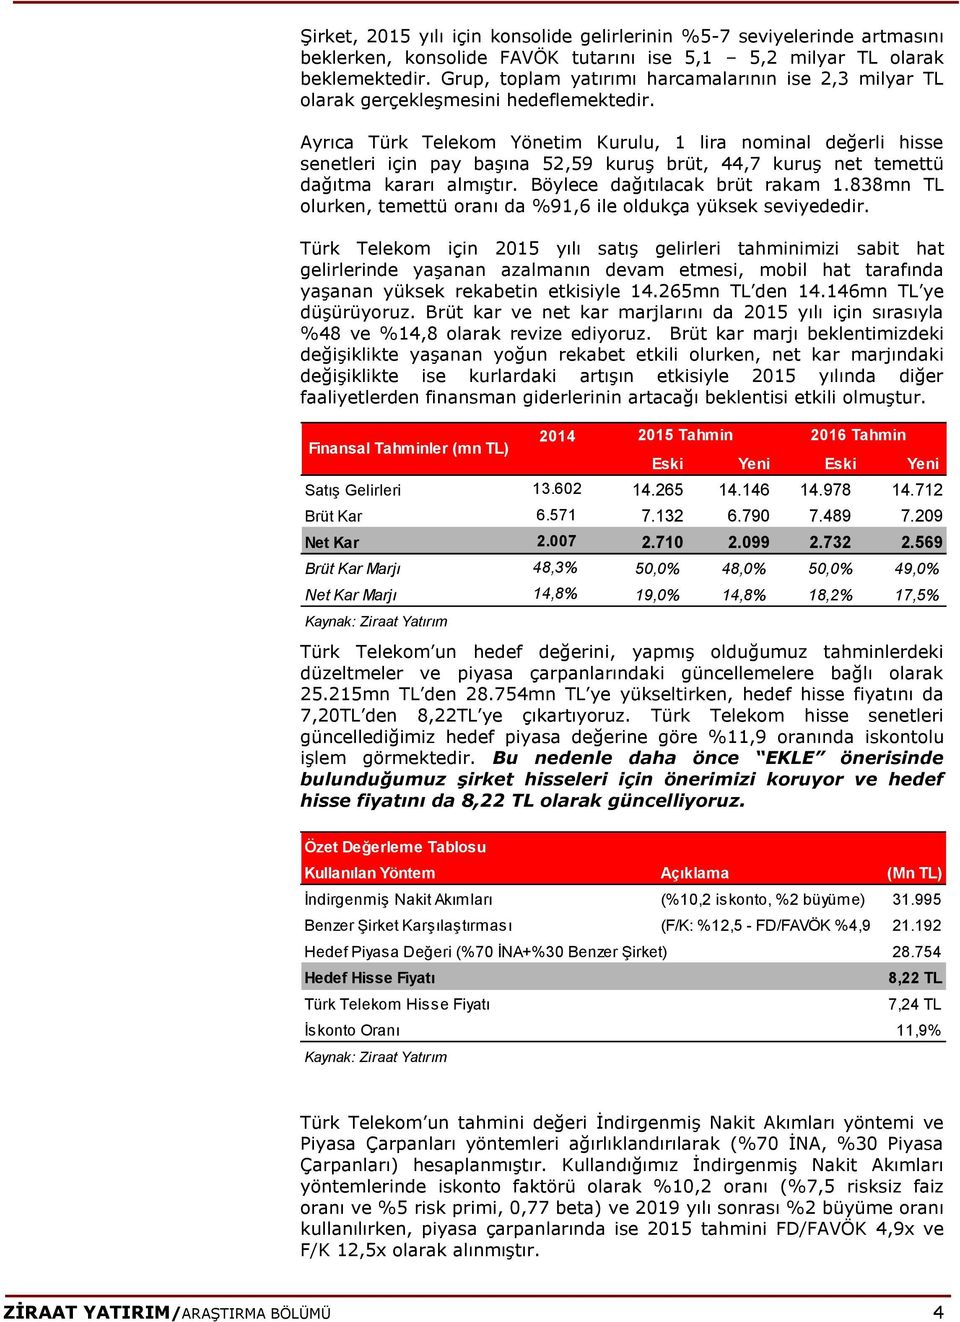 Ayrıca Türk Telekom Yönetim Kurulu, 1 lira nominal değerli hisse senetleri için pay başına 52,59 kuruş brüt, 44,7 kuruş net temettü dağıtma kararı almıştır. Böylece dağıtılacak brüt rakam 1.